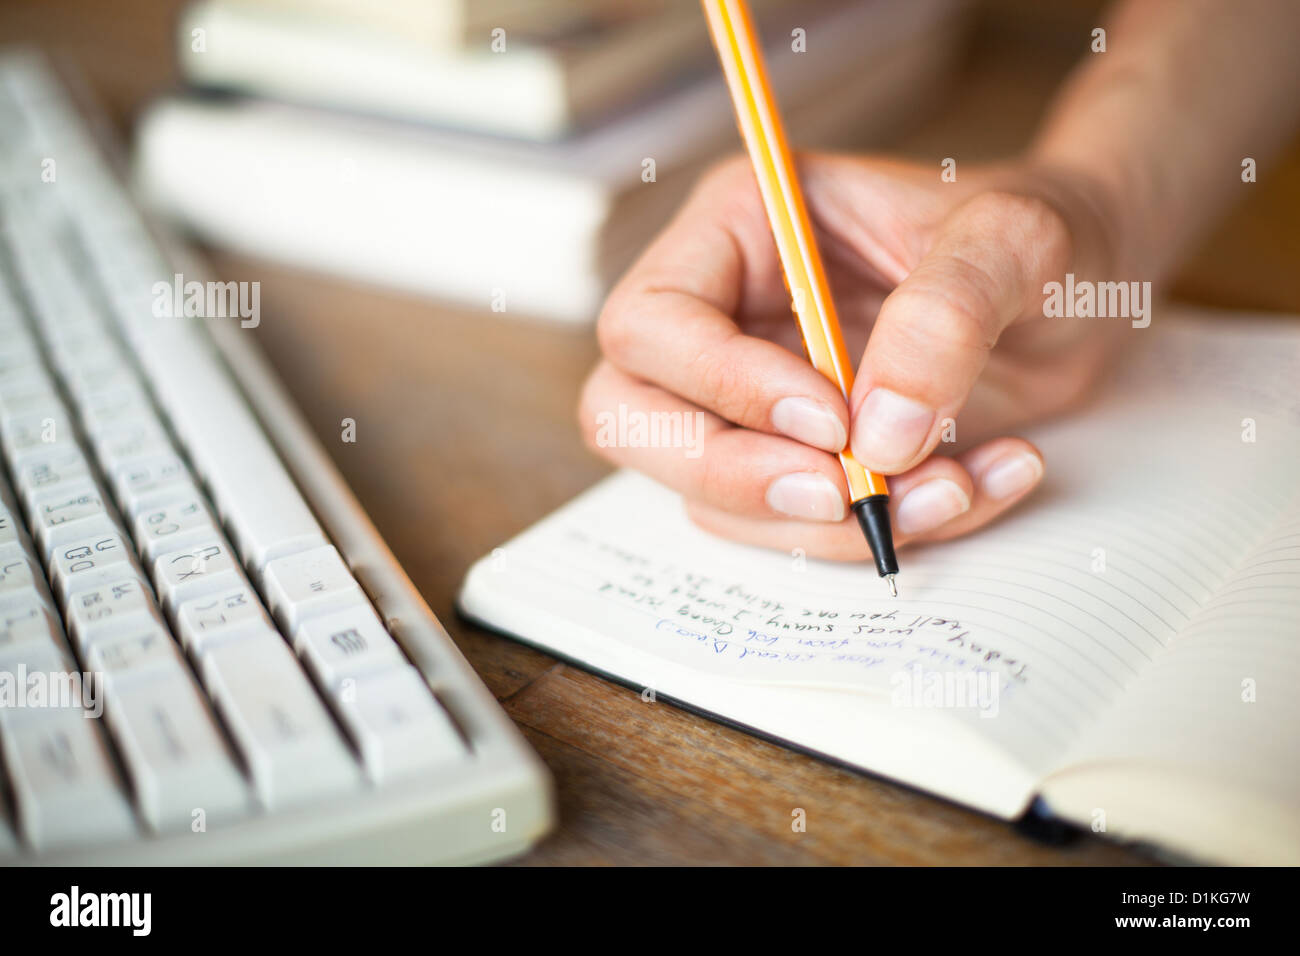 Photo de mains écrit un stylo dans un ordinateur portable, clavier de l'ordinateur et une pile de livres en arrière-plan Banque D'Images